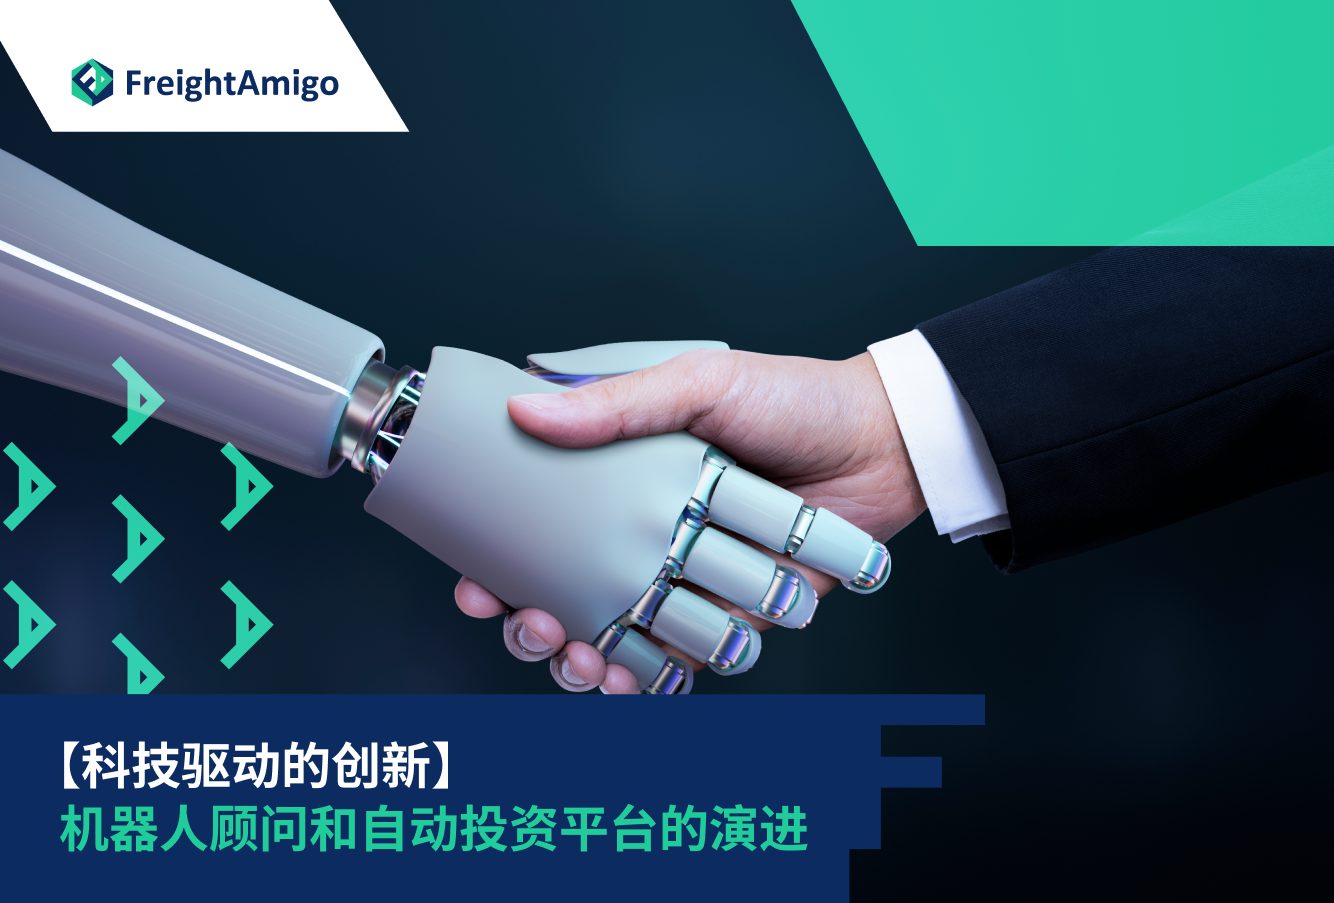 【科技驱动的创新】机器人顾问和自动投资平台的演进